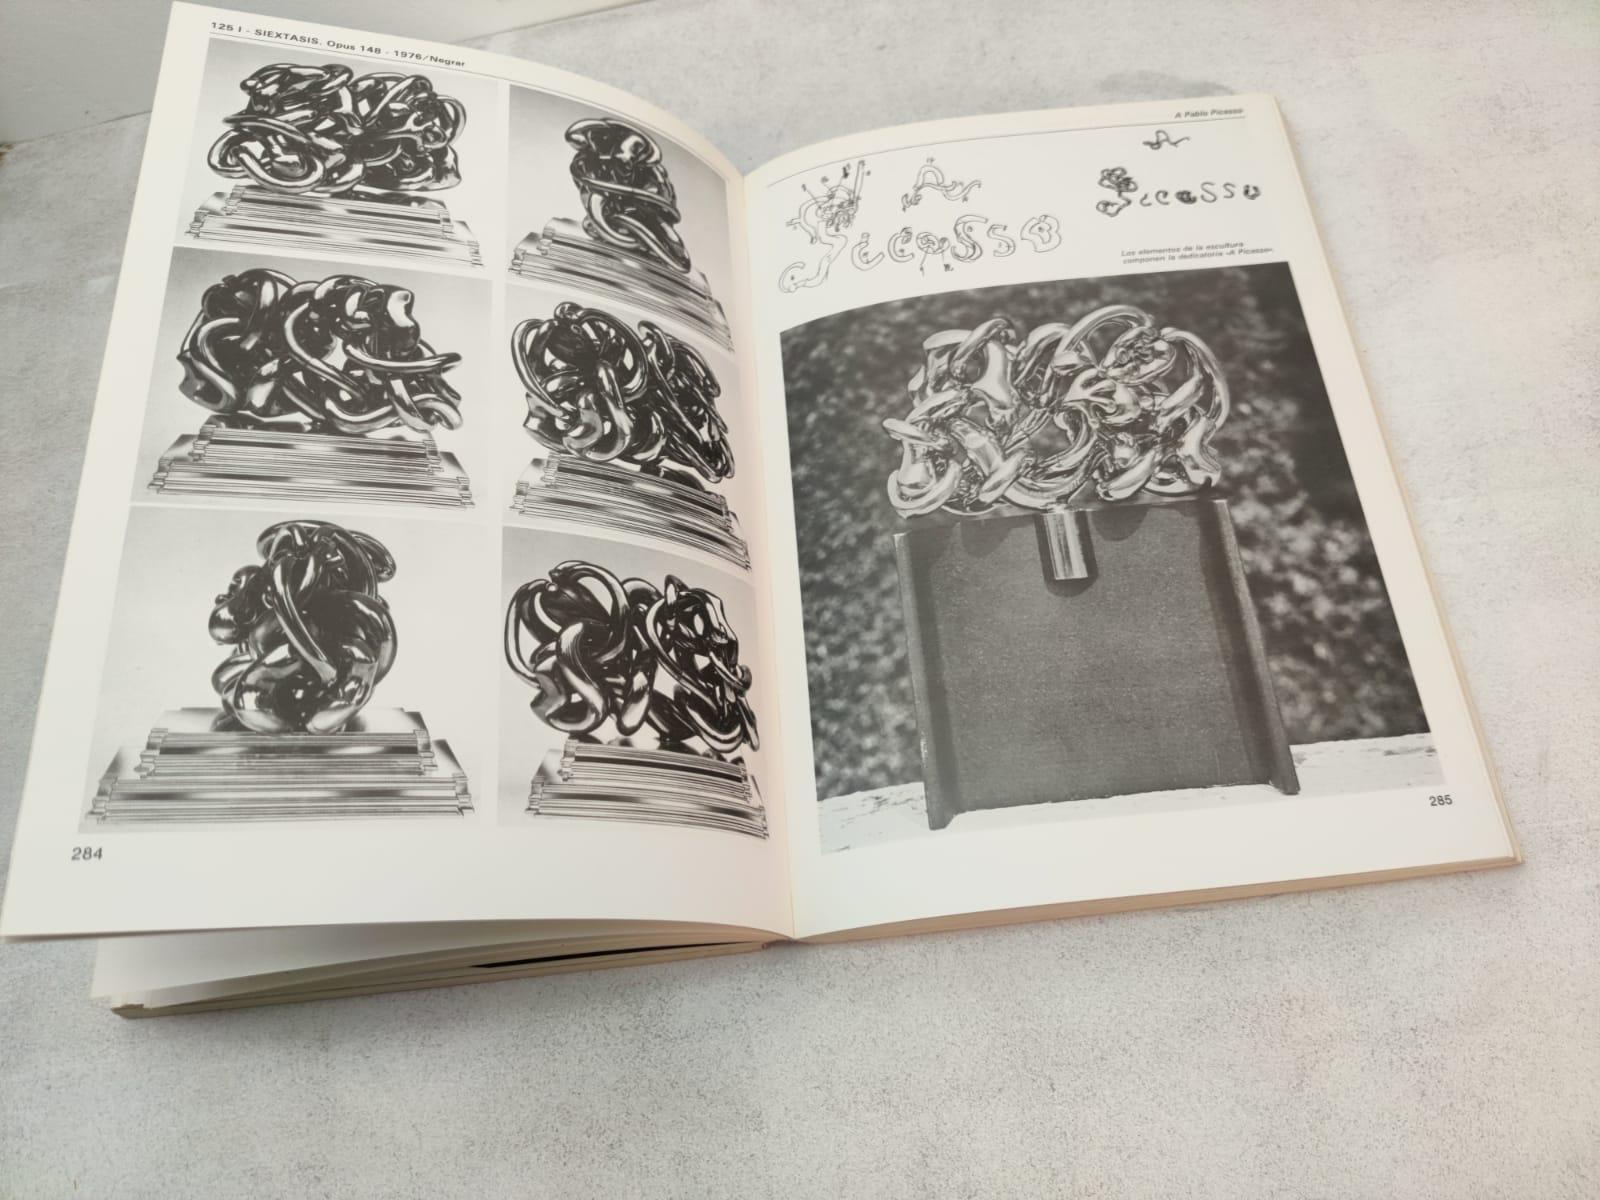 Exclusive Book Antológica Berrocal 1955- 84 Sculptures & Work of Miguel Berrocal 1